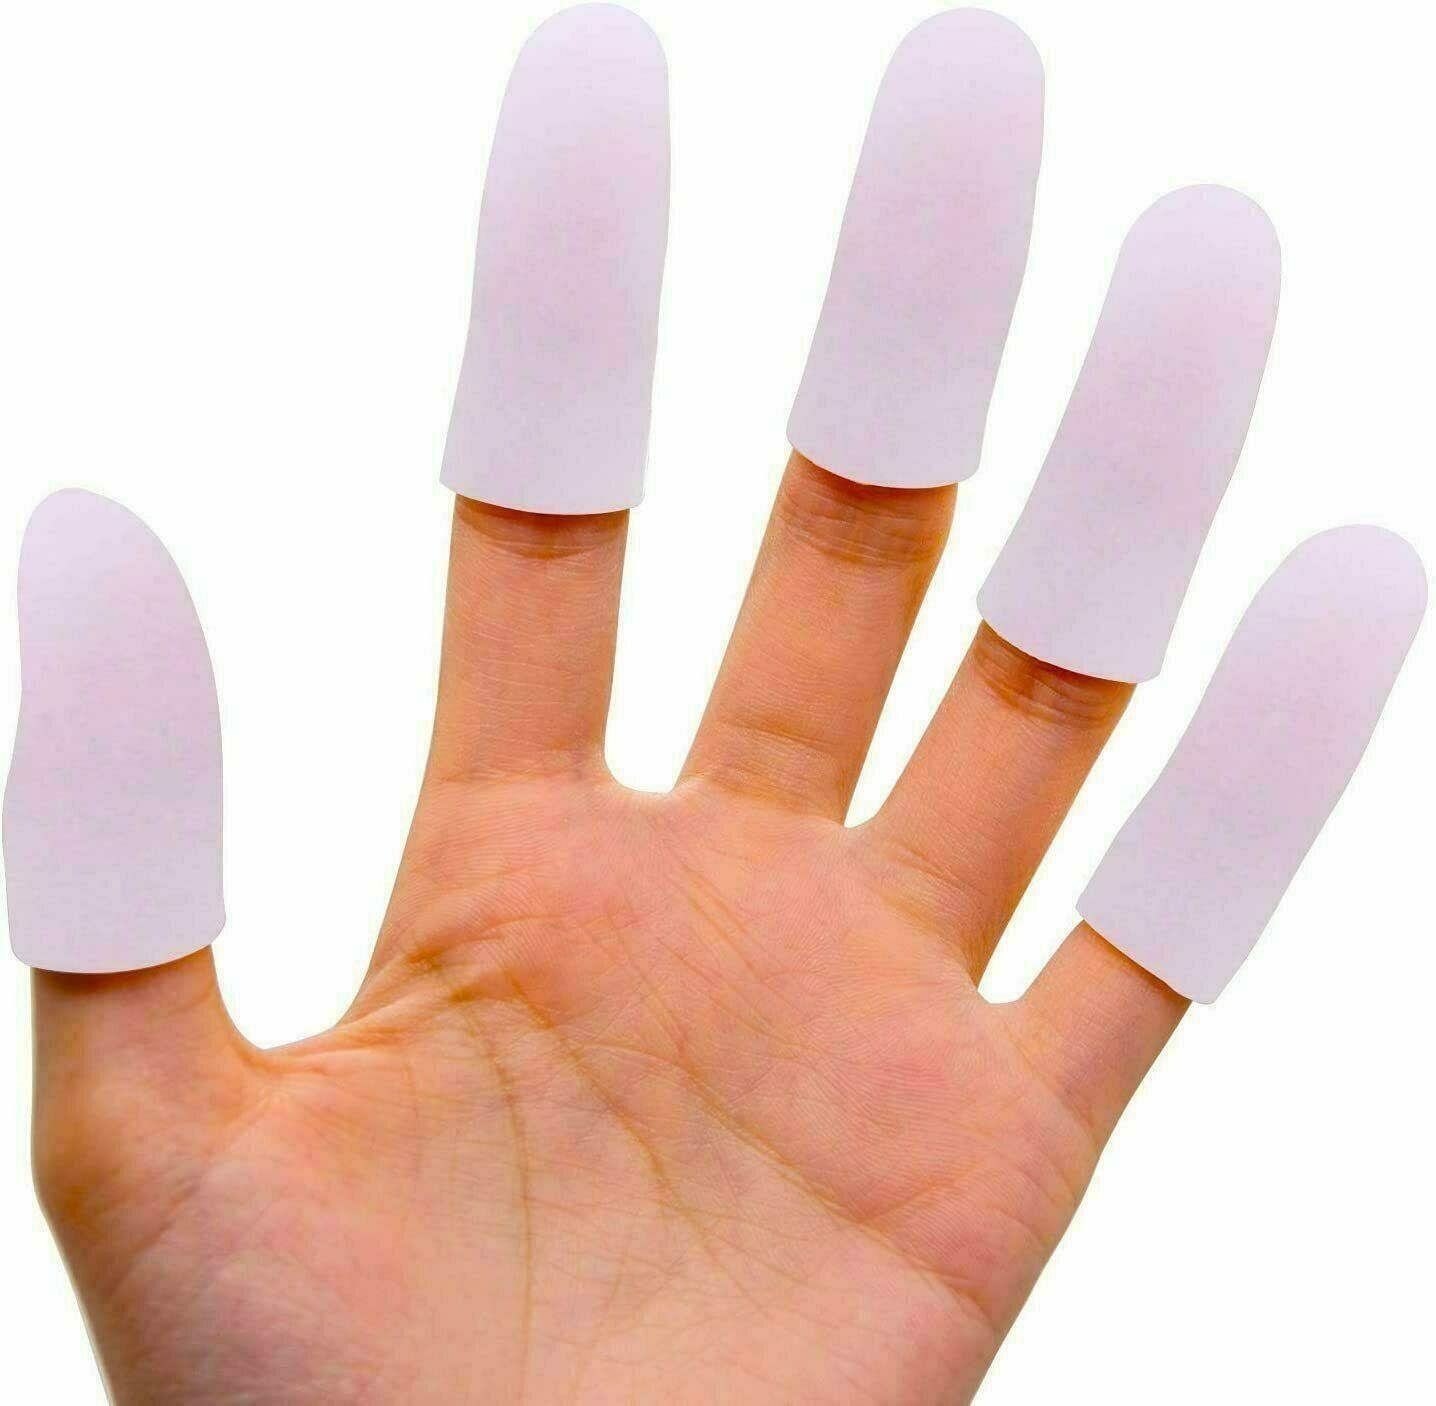 Silikon Fingerschutz Abdeckungen Fingerkuppen Protector Für Heißklebepistole 